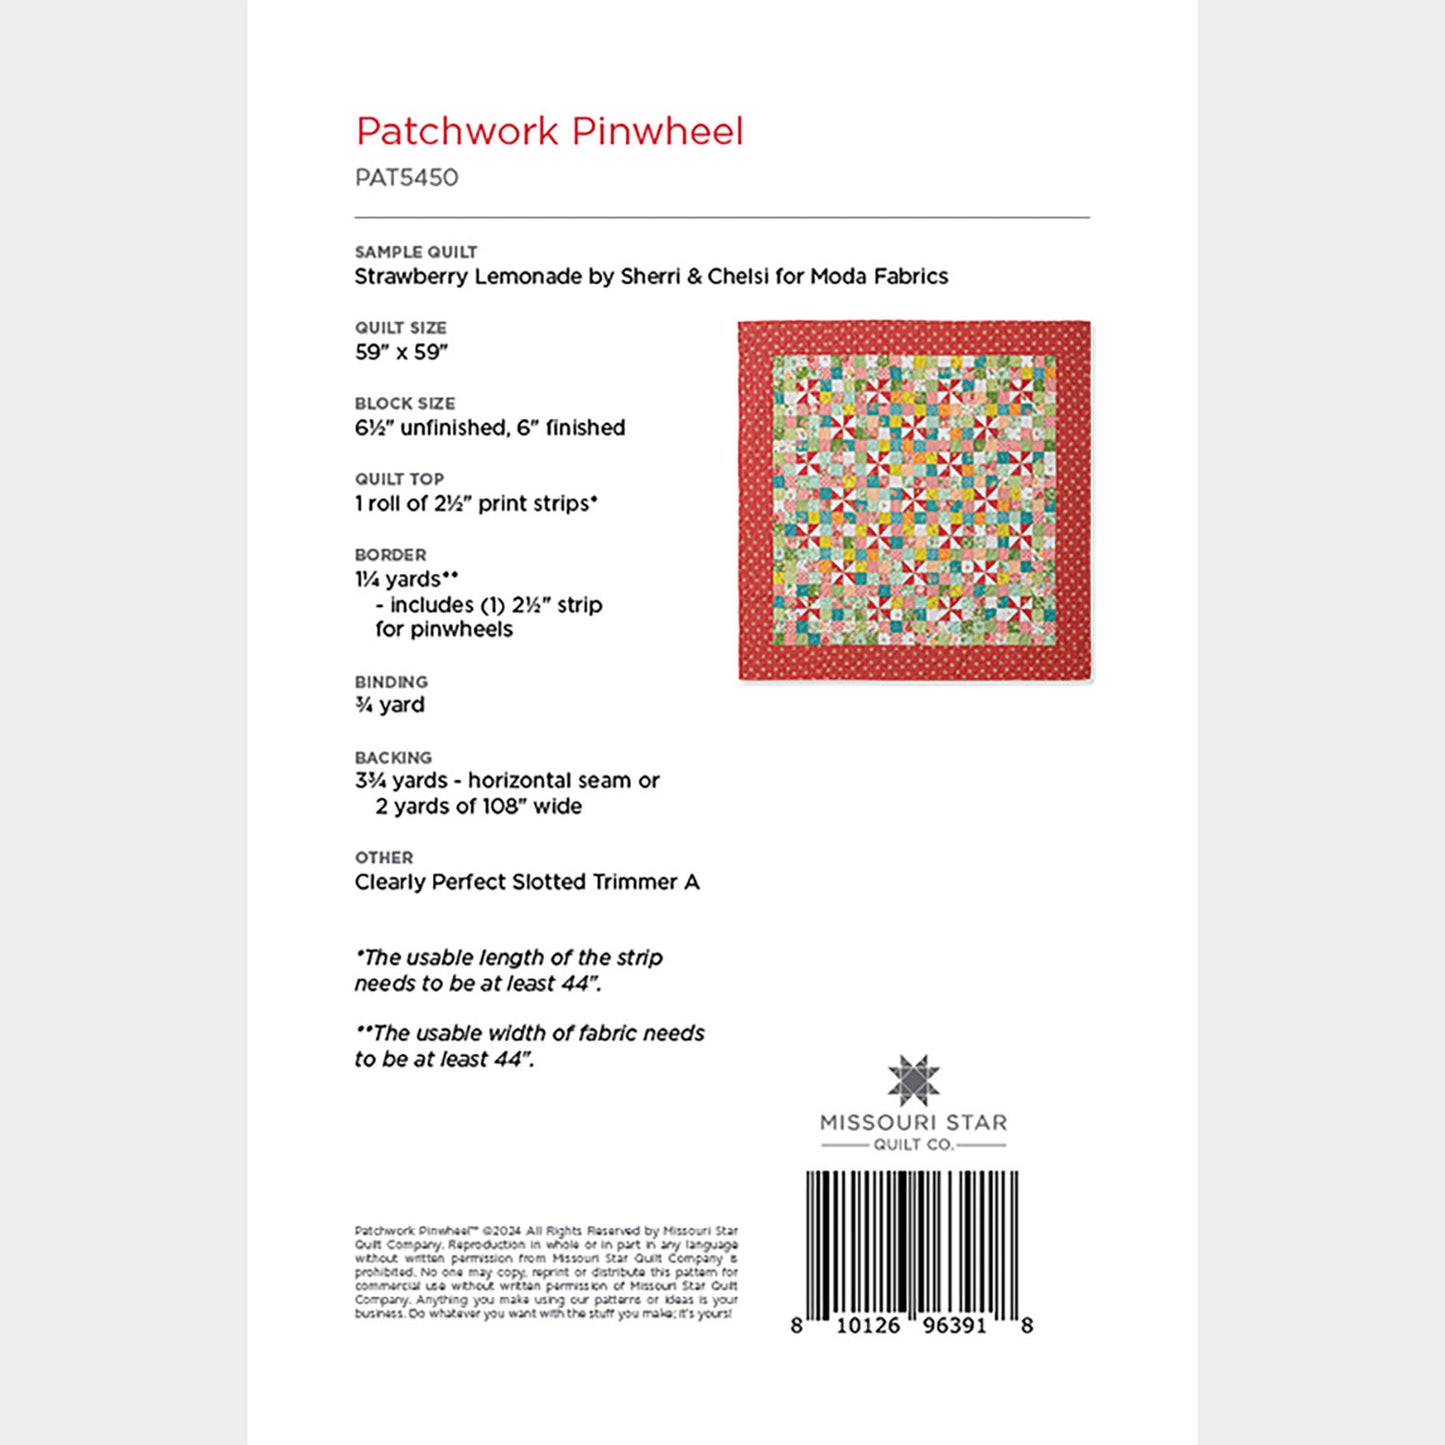 Patchwork Pinwheel Quilt Pattern by Missouri Star Alternative View #1